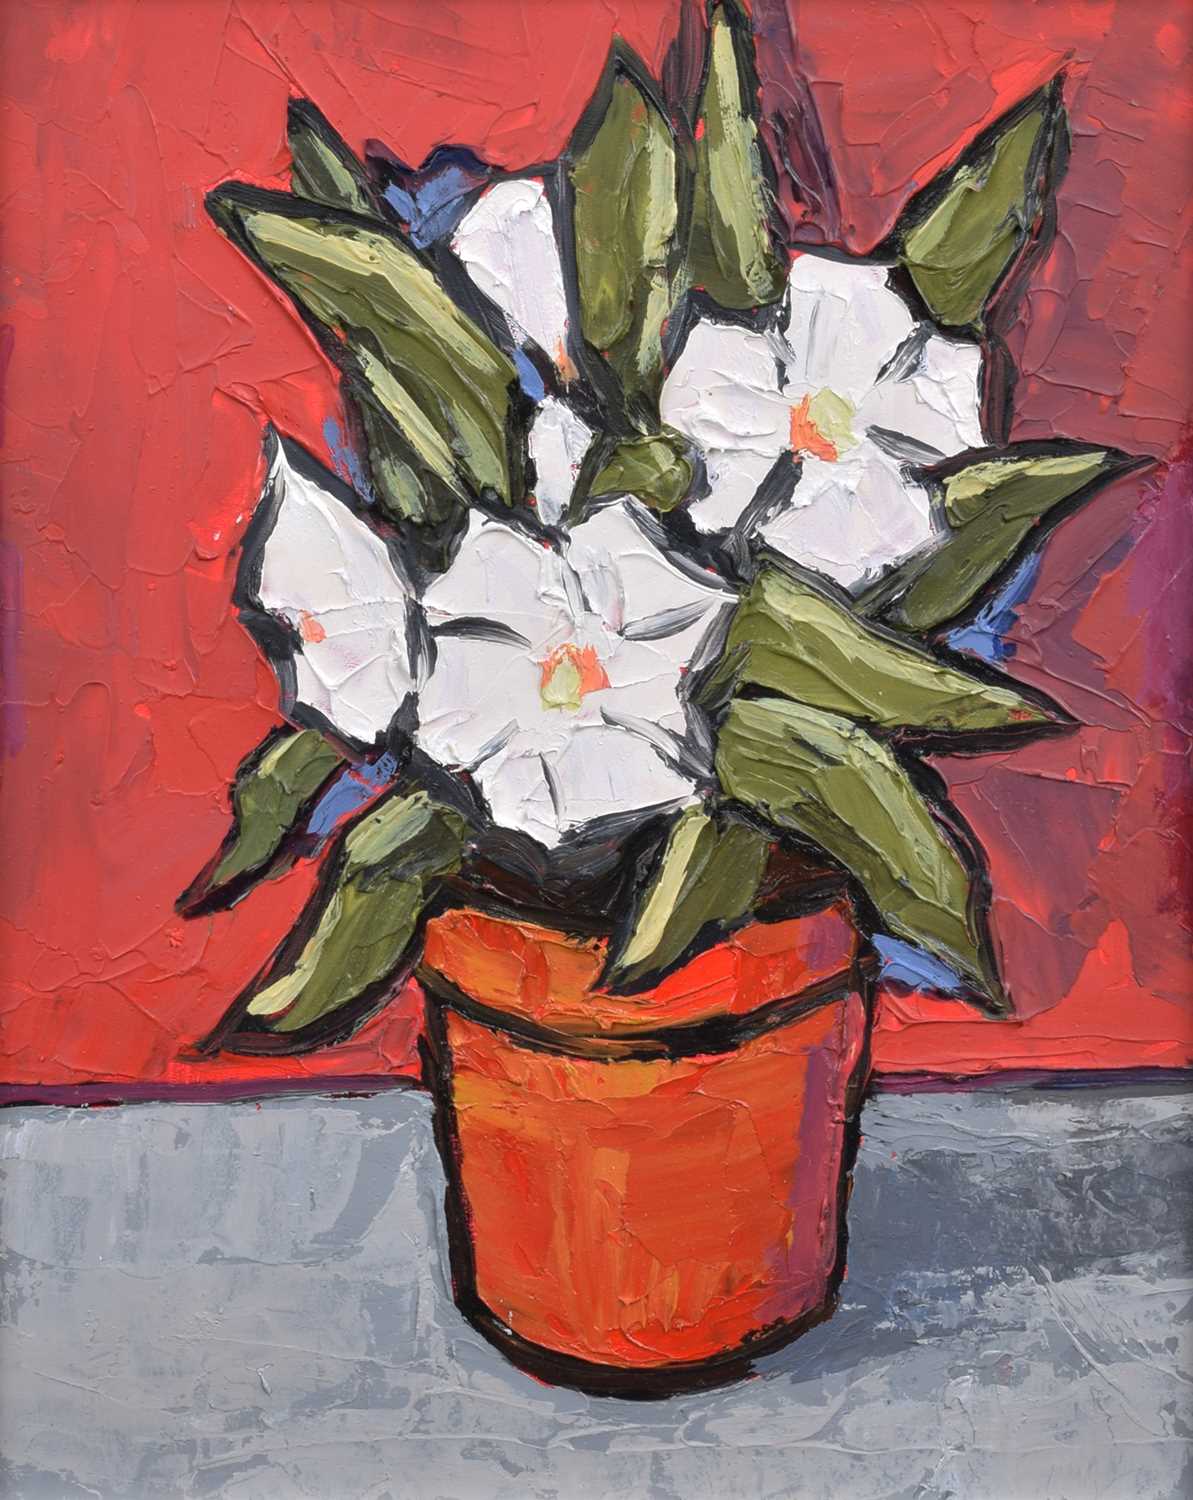 David Barnes (British 1943-) "White Flowers"